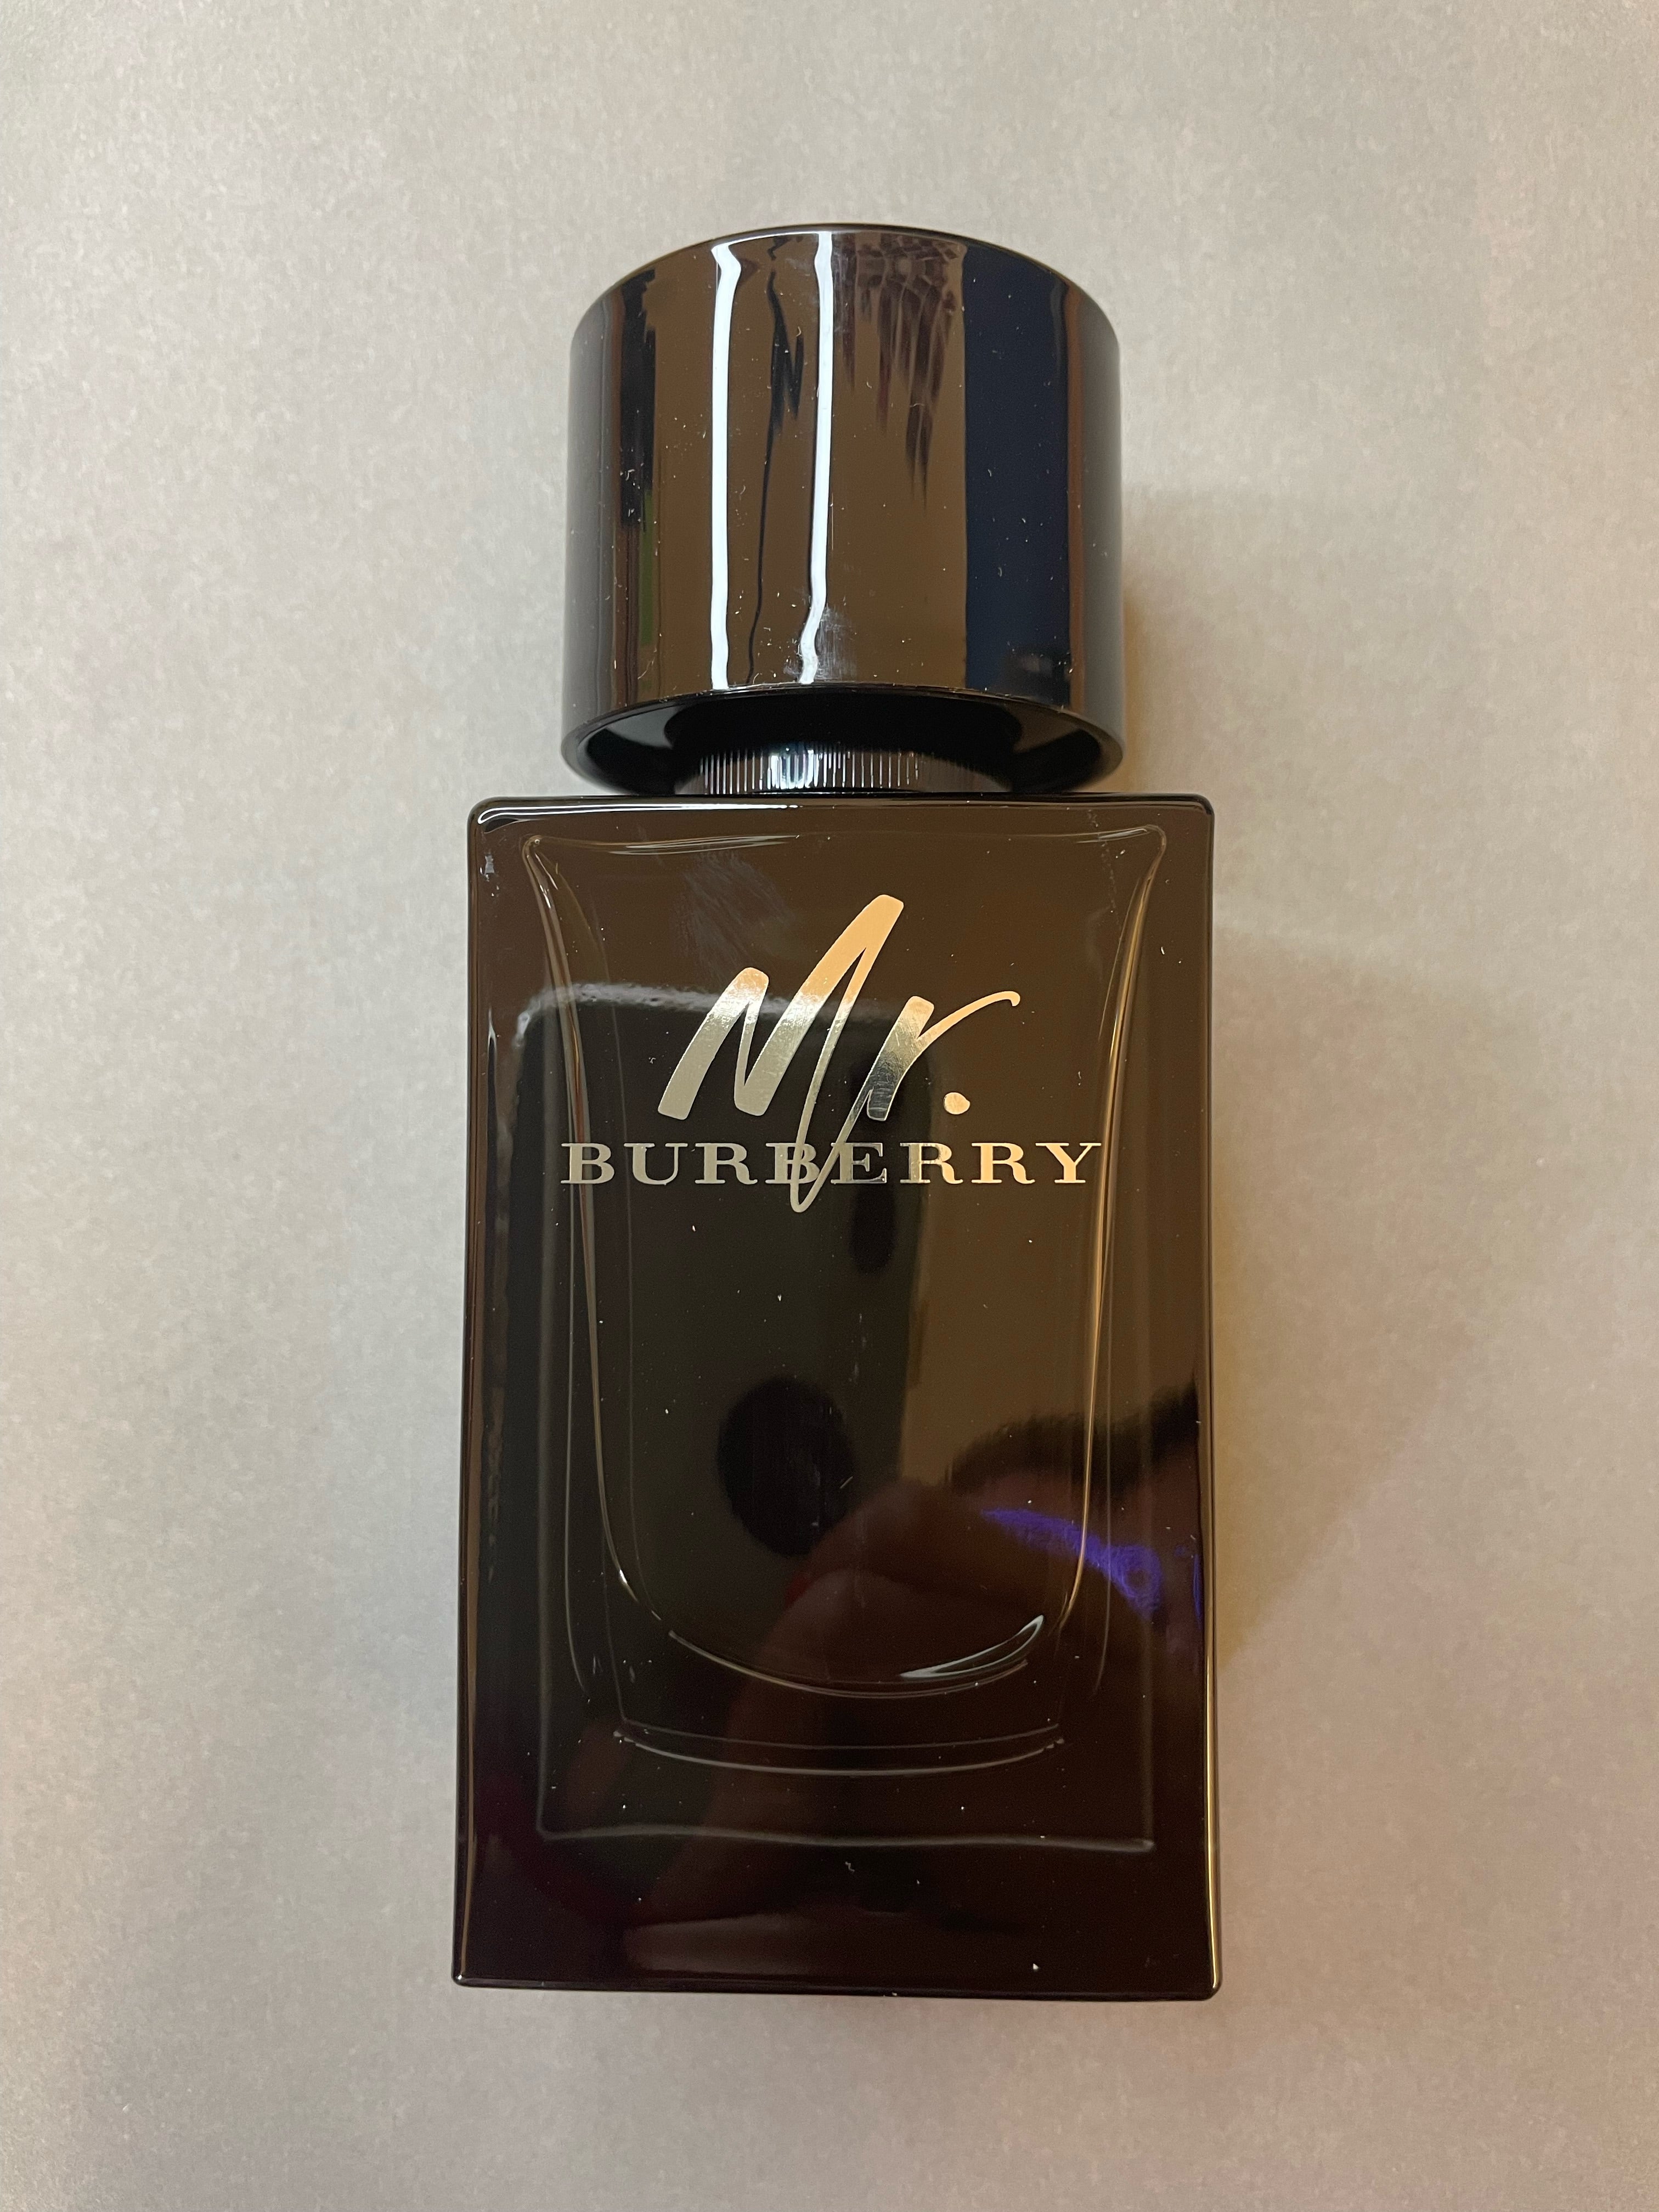 Burberry Mr Burberry EDP – Fragrance Samples UK